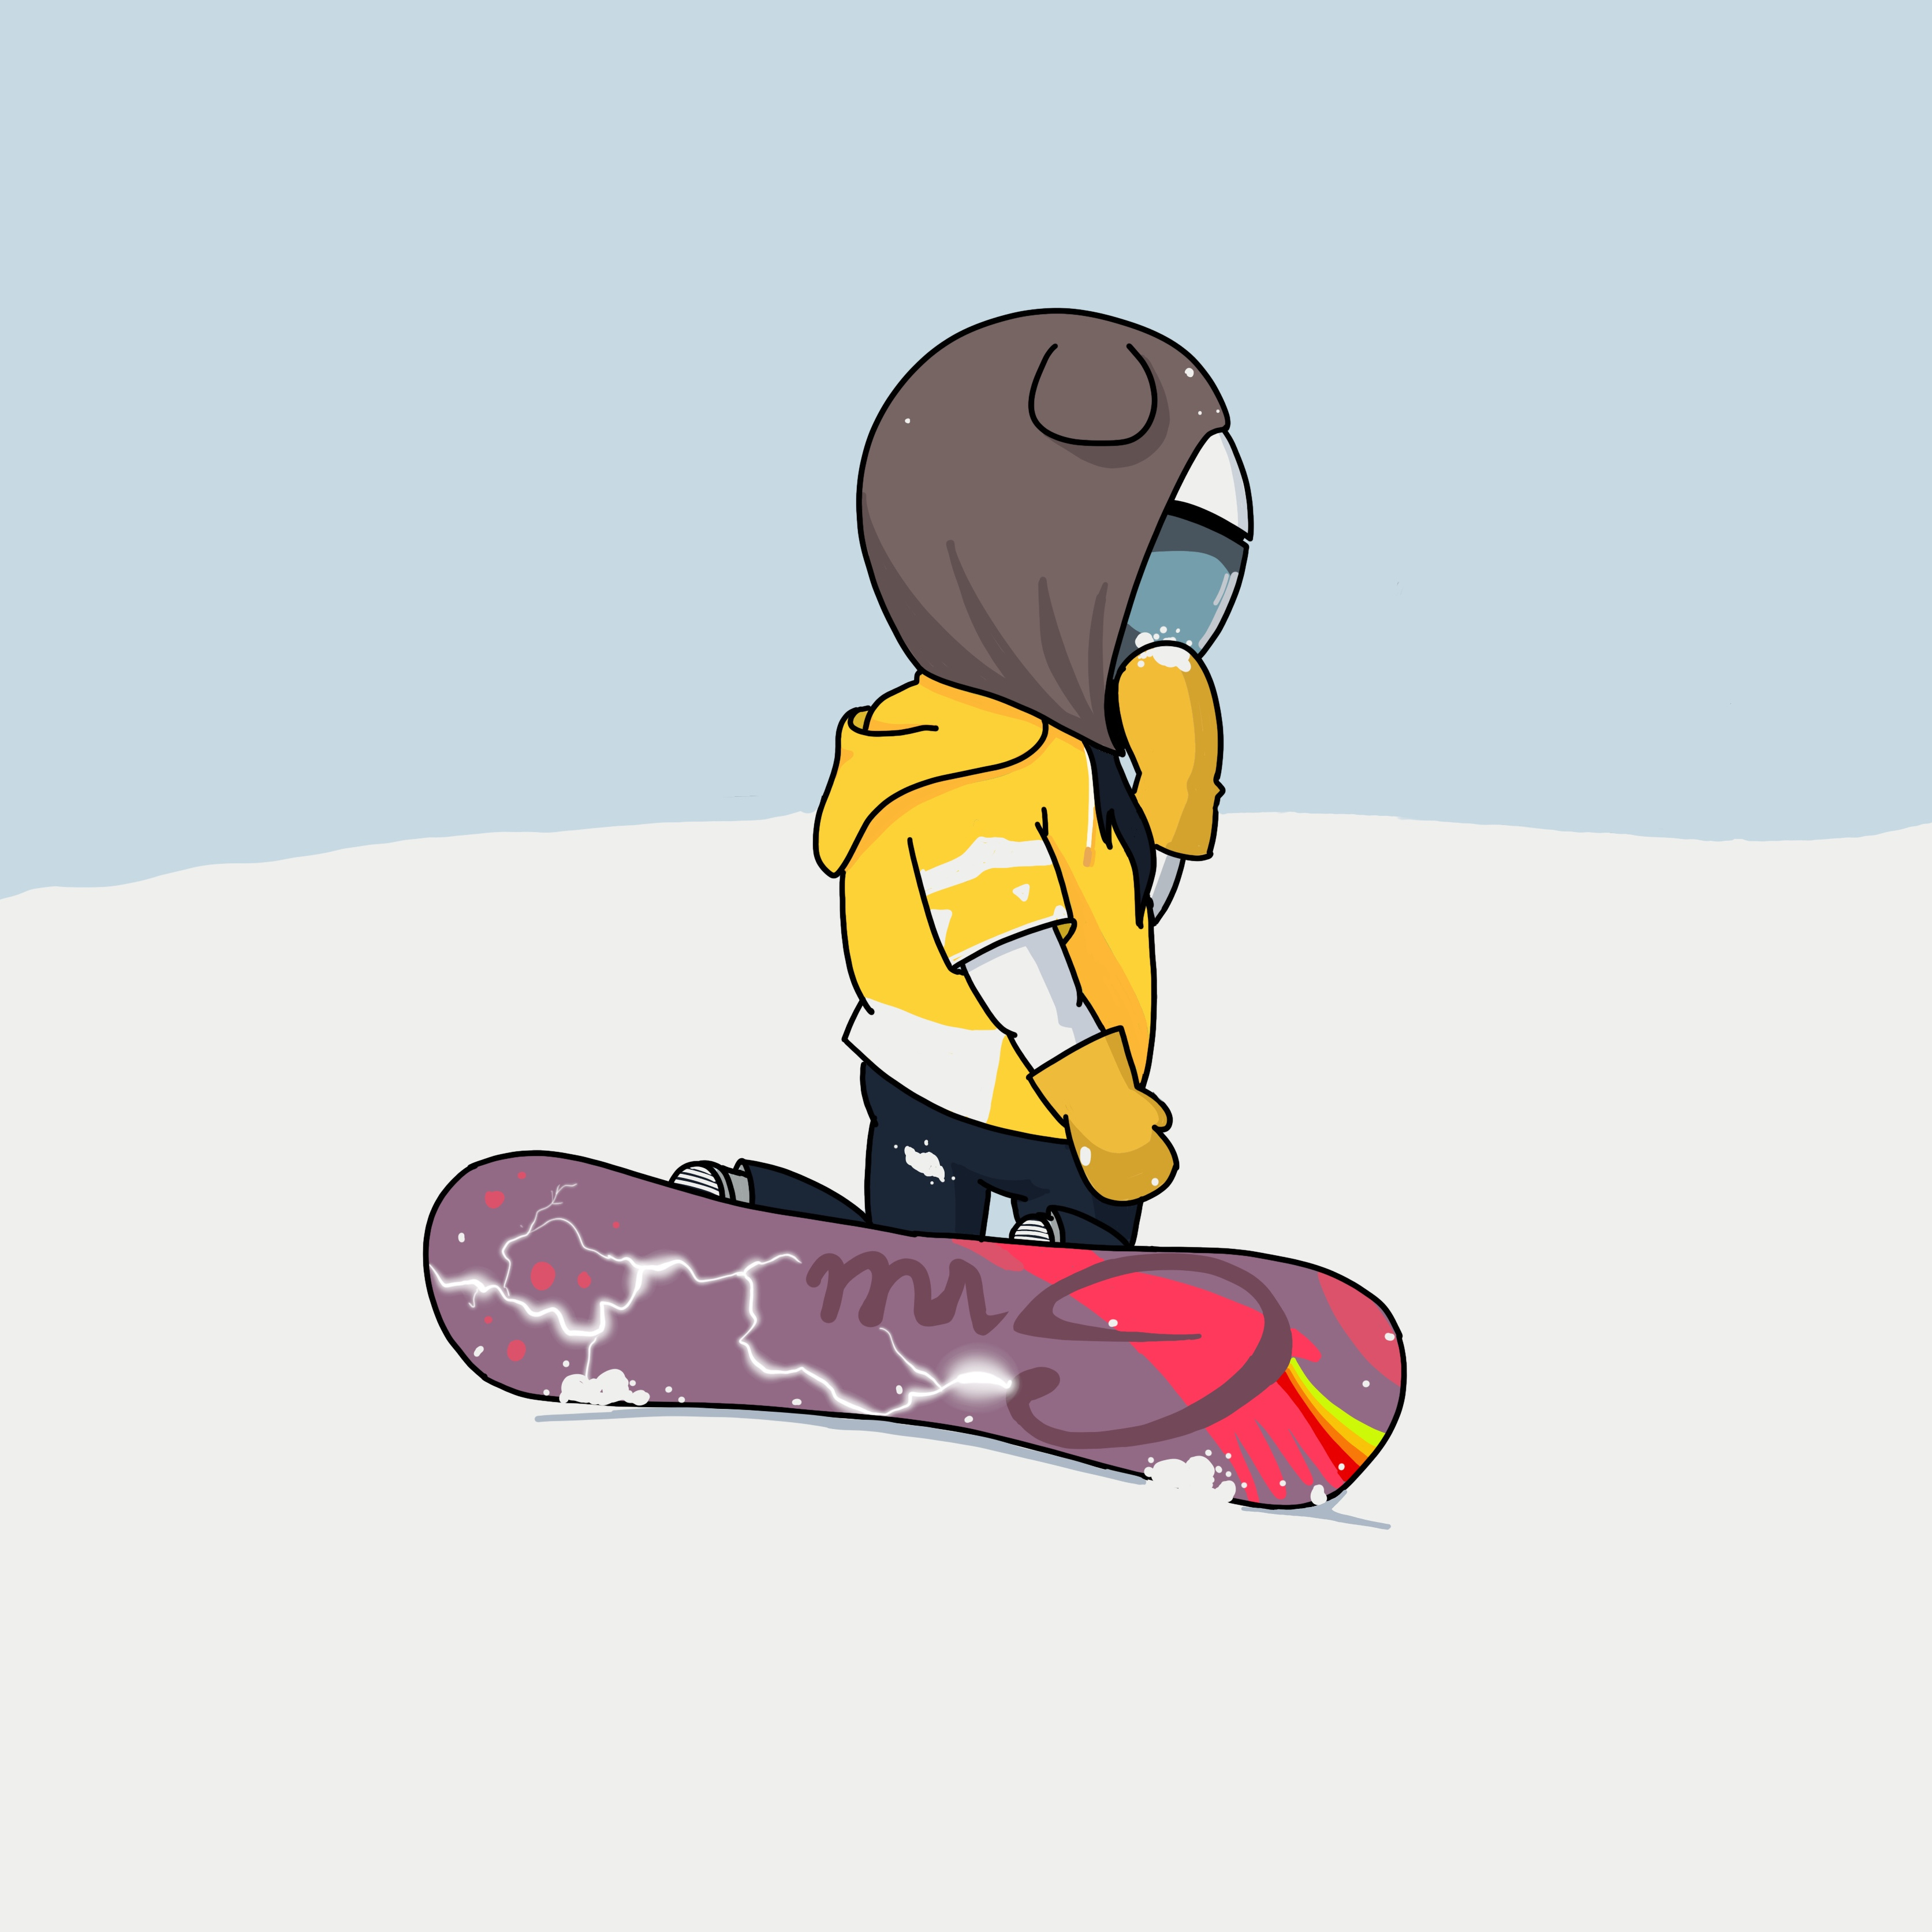 有谁见过这种镂空的滑雪板吗？